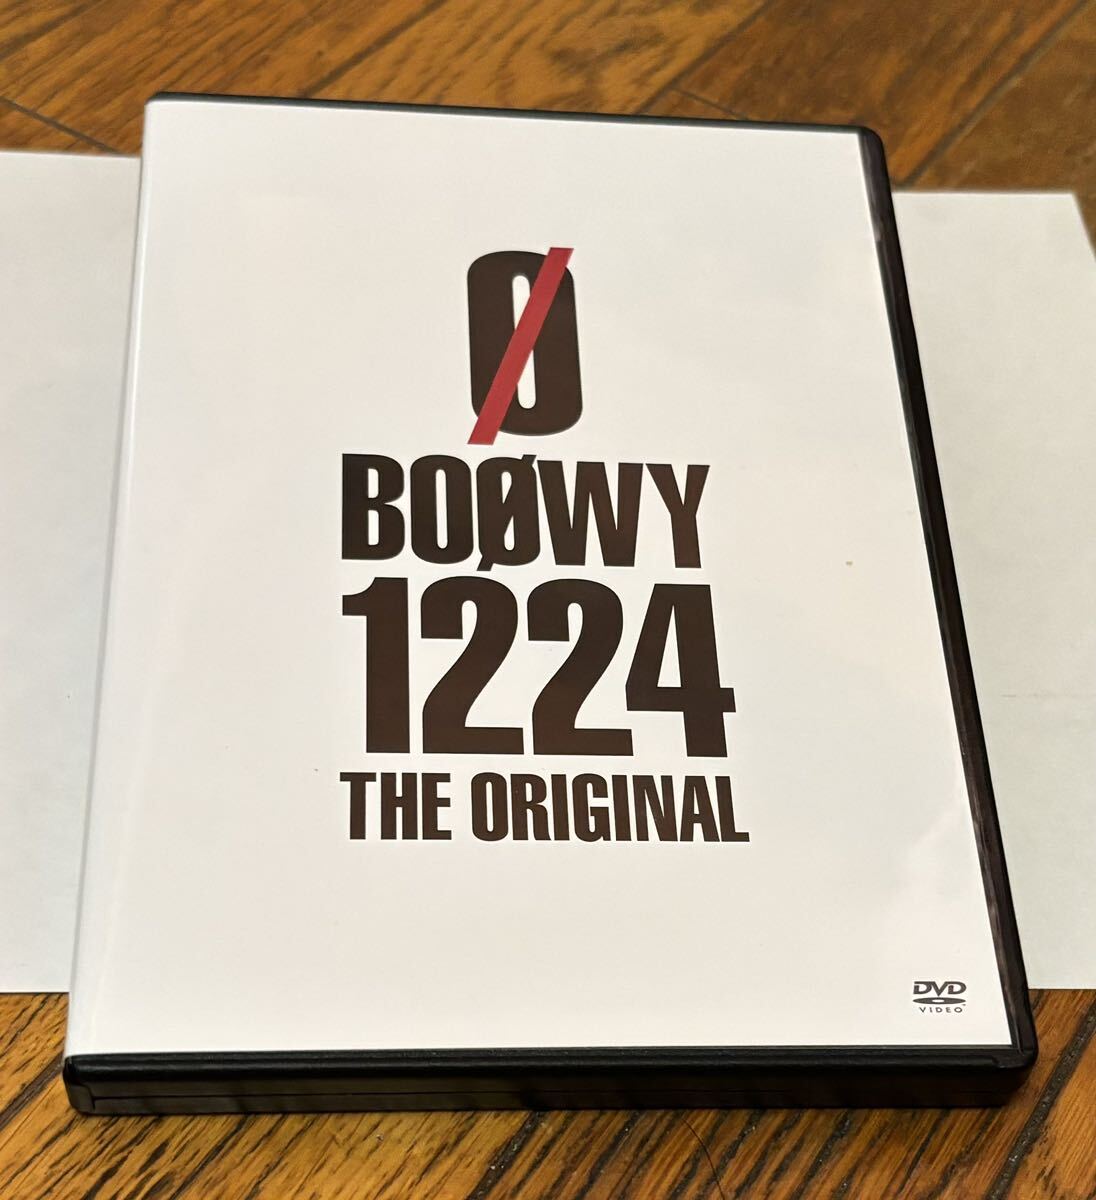 音楽 邦楽 J-ROCK J-POP BOOWY ボウイ BOOWY 1224 THE ORIGINAL DVD版 中古。の画像1